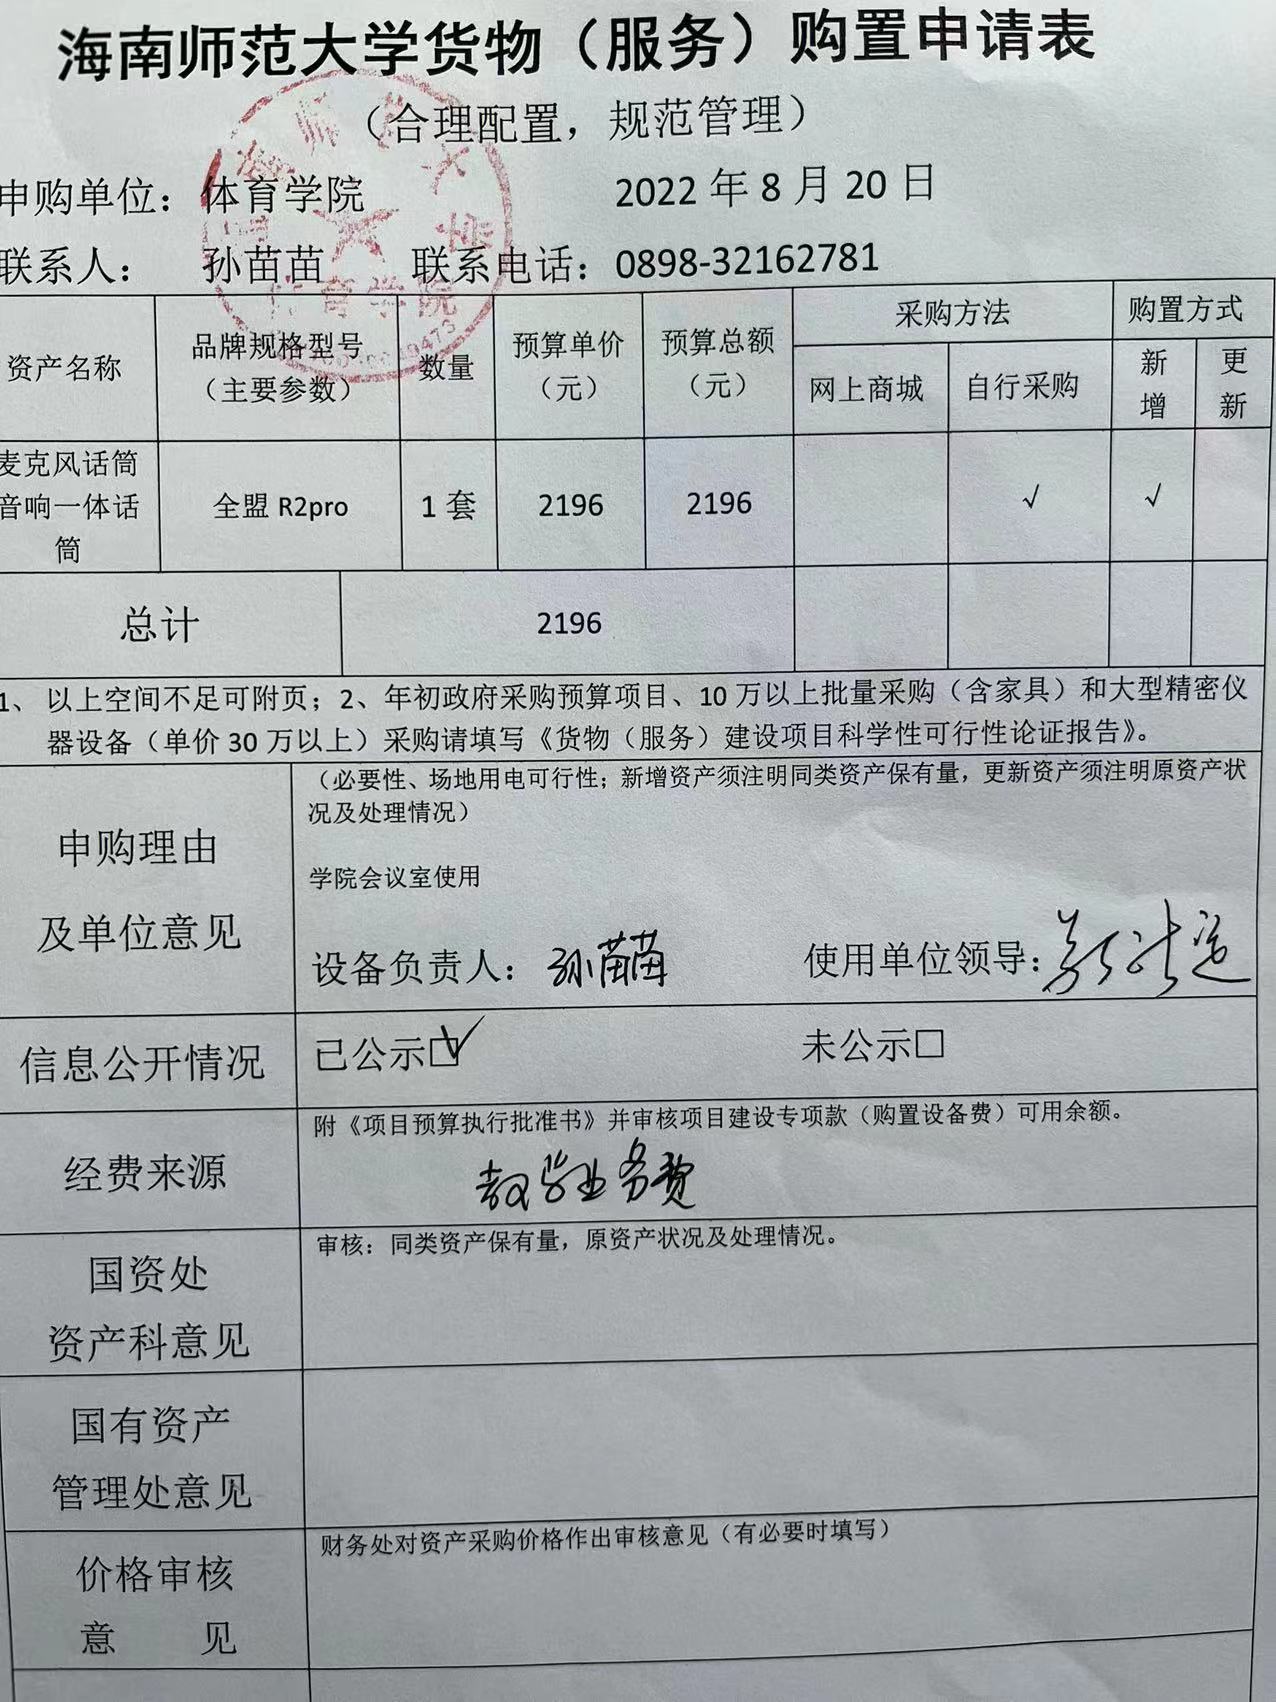 海南师范大学货物（服务）购置申请表8.20